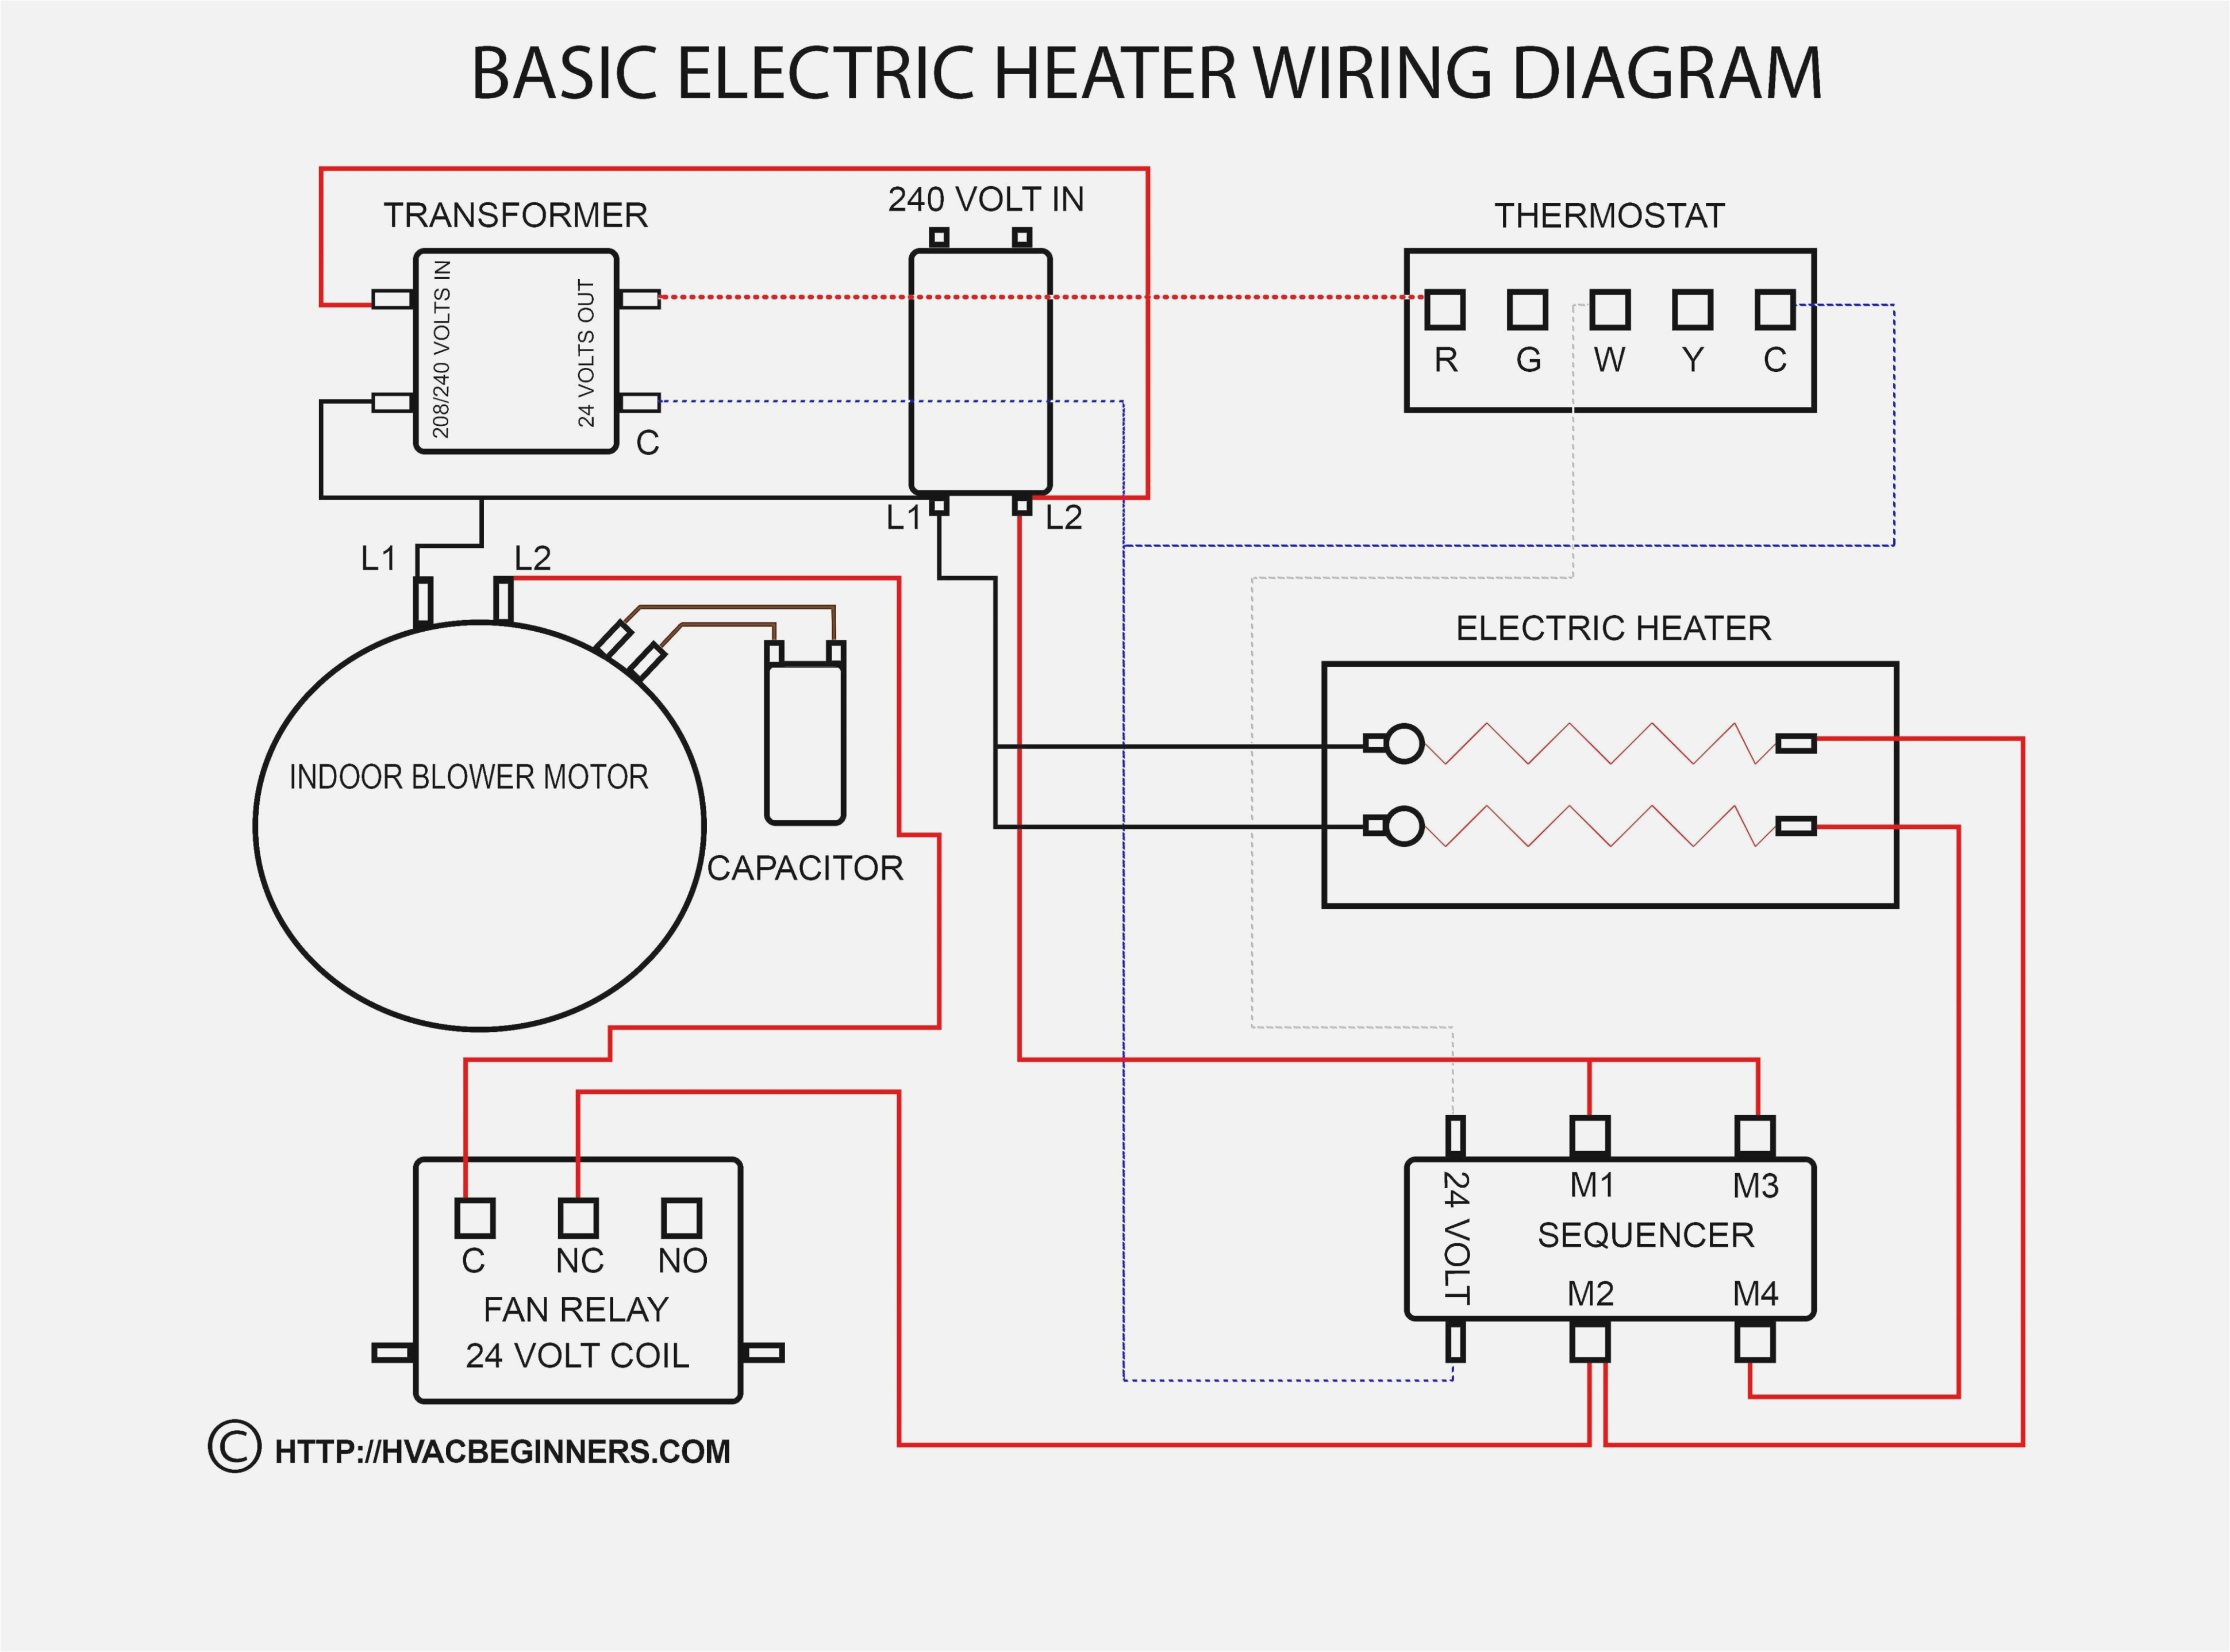 air compressor 240 volt wiring diagram wiring diagram options air pressor 240 volt wiring diagram wiring